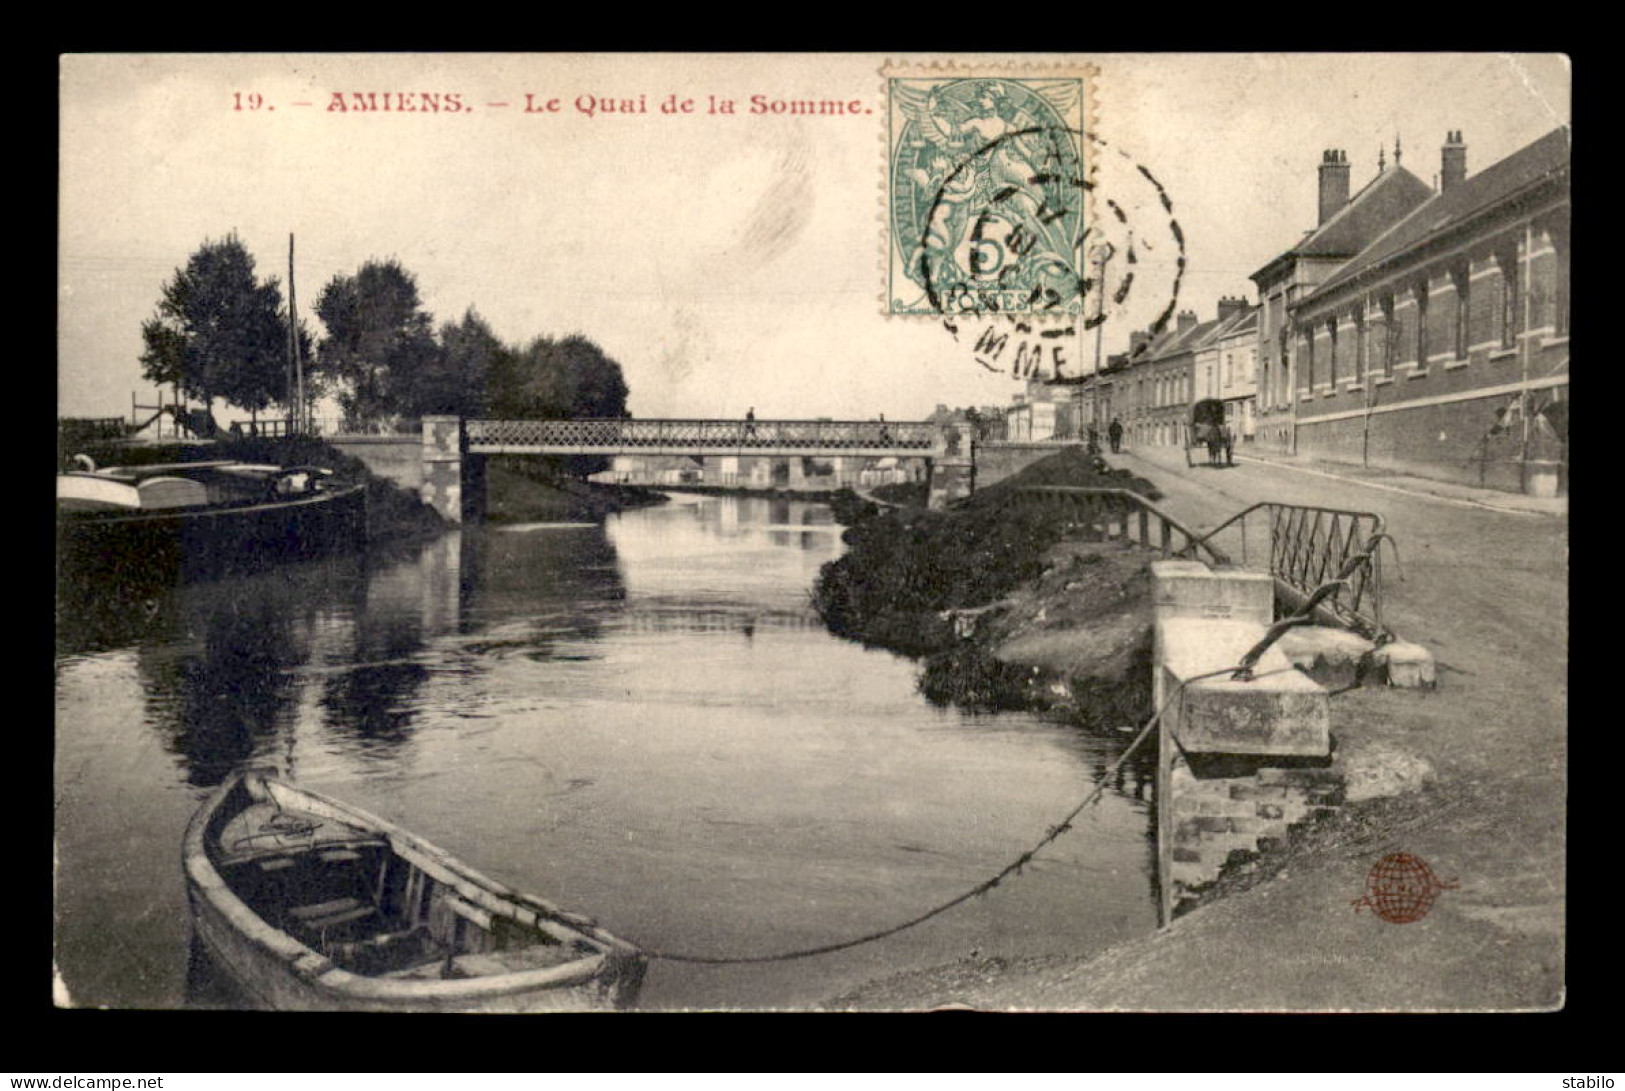 80 - AMIENS - LE QUAI DE LA SOMME - PENICHE - Amiens